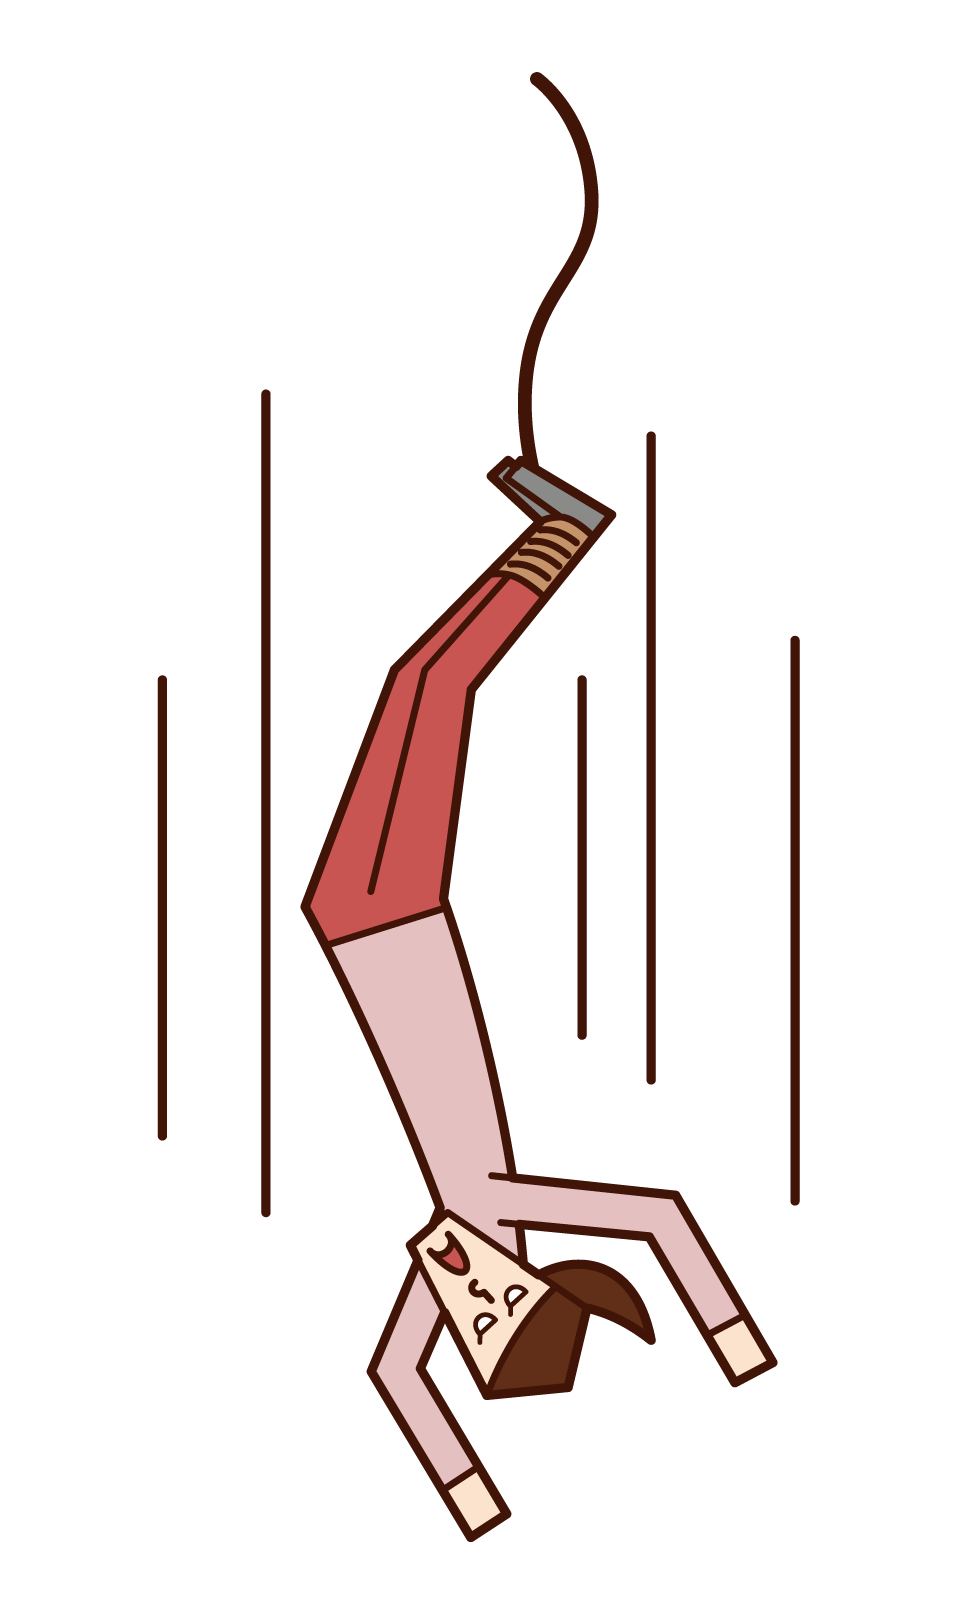 バンジージャンプをする人 女性 のイラスト フリーイラスト素材 Kukukeke ククケケ